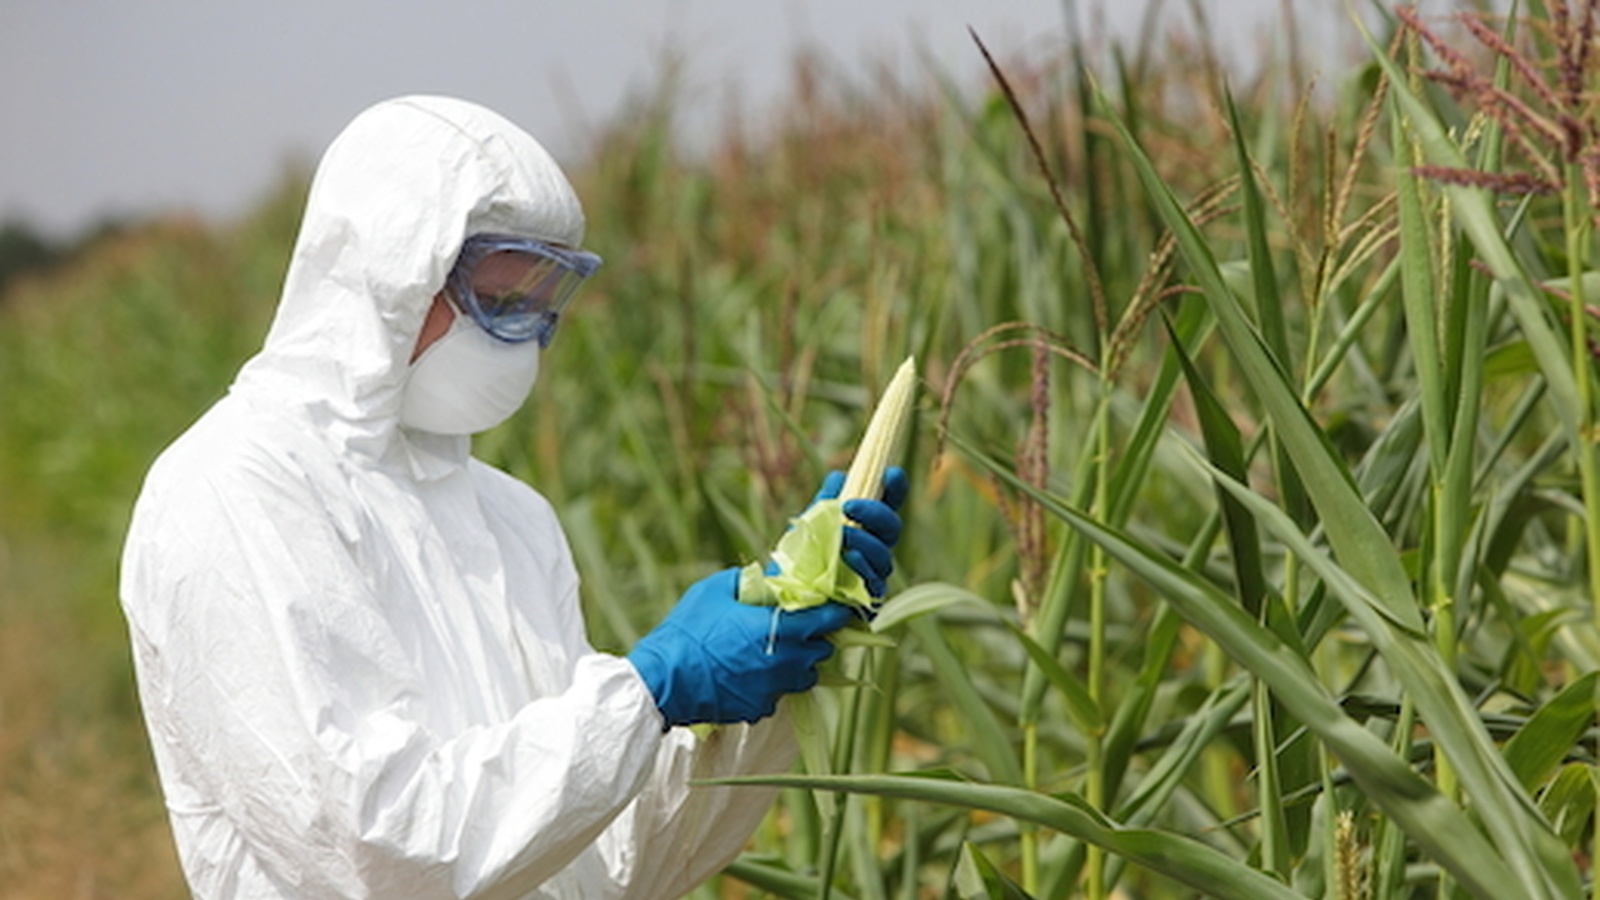 6 Easy Ways To Avoid GMO's